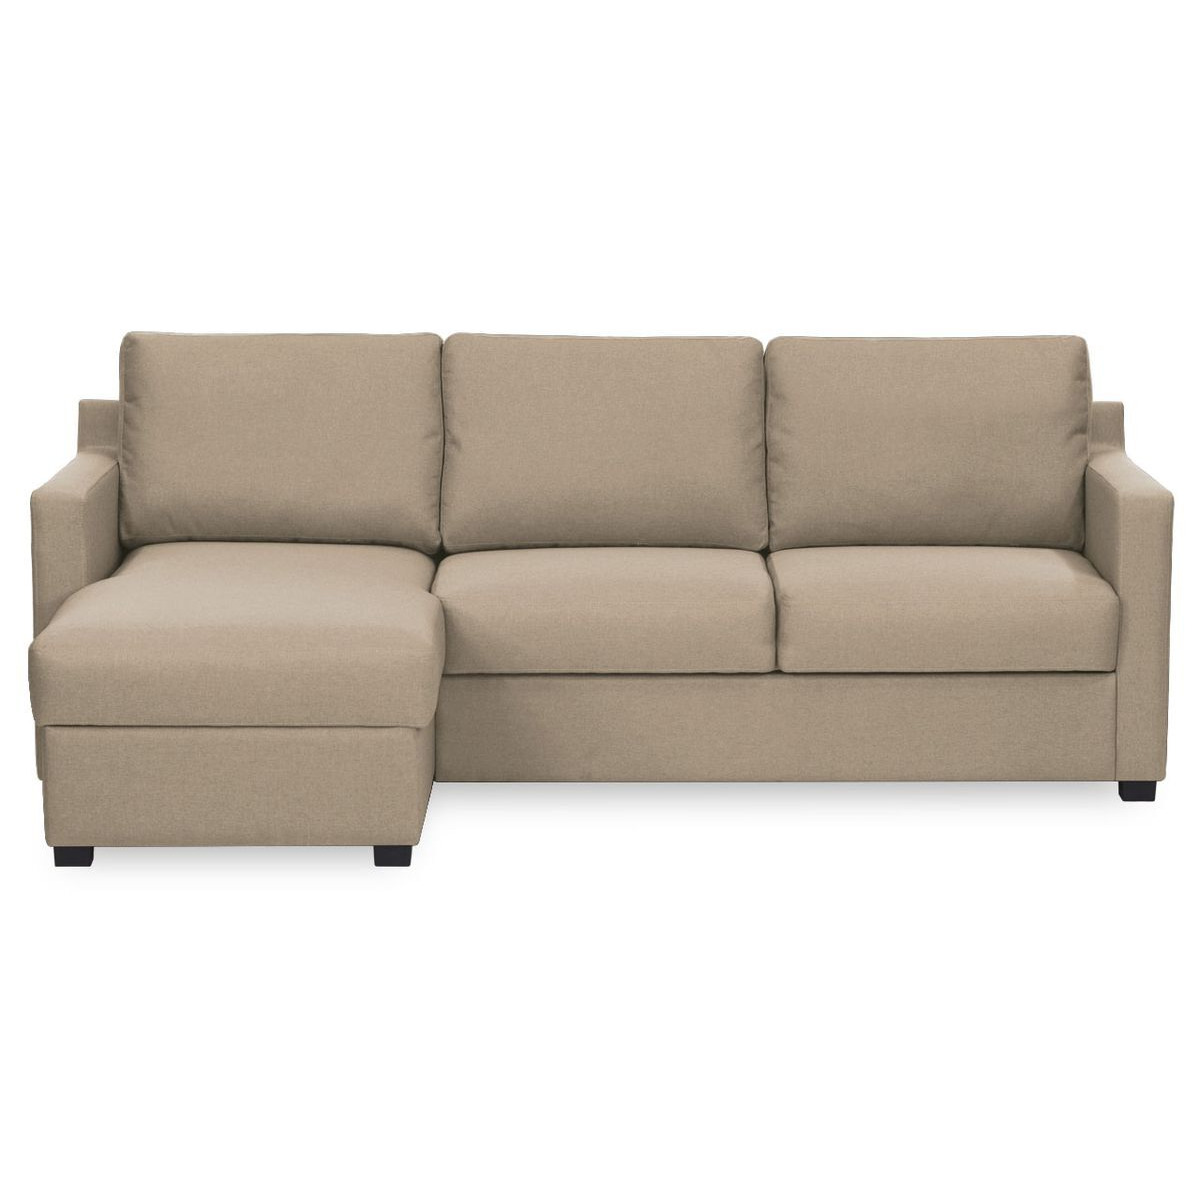 Kropp Left Hand Corner Sofa Bed With Storage, beige - image 1